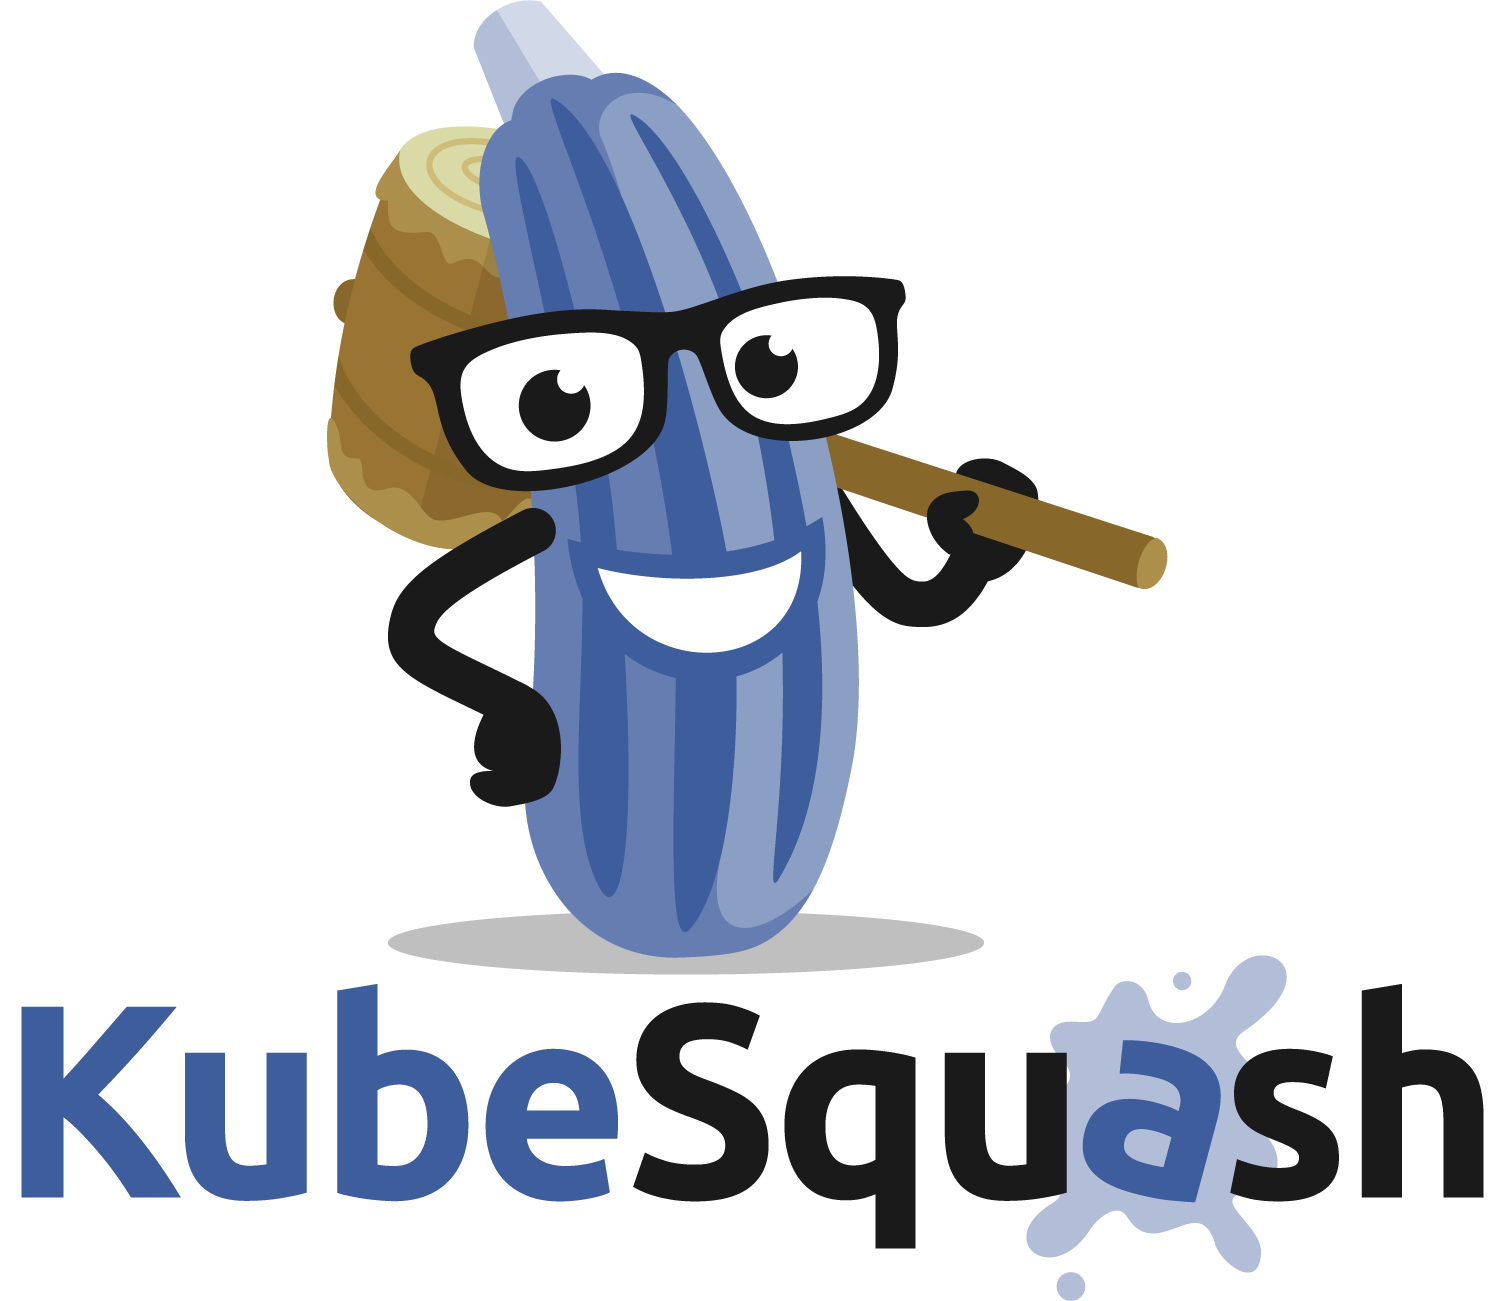 KubeSquash